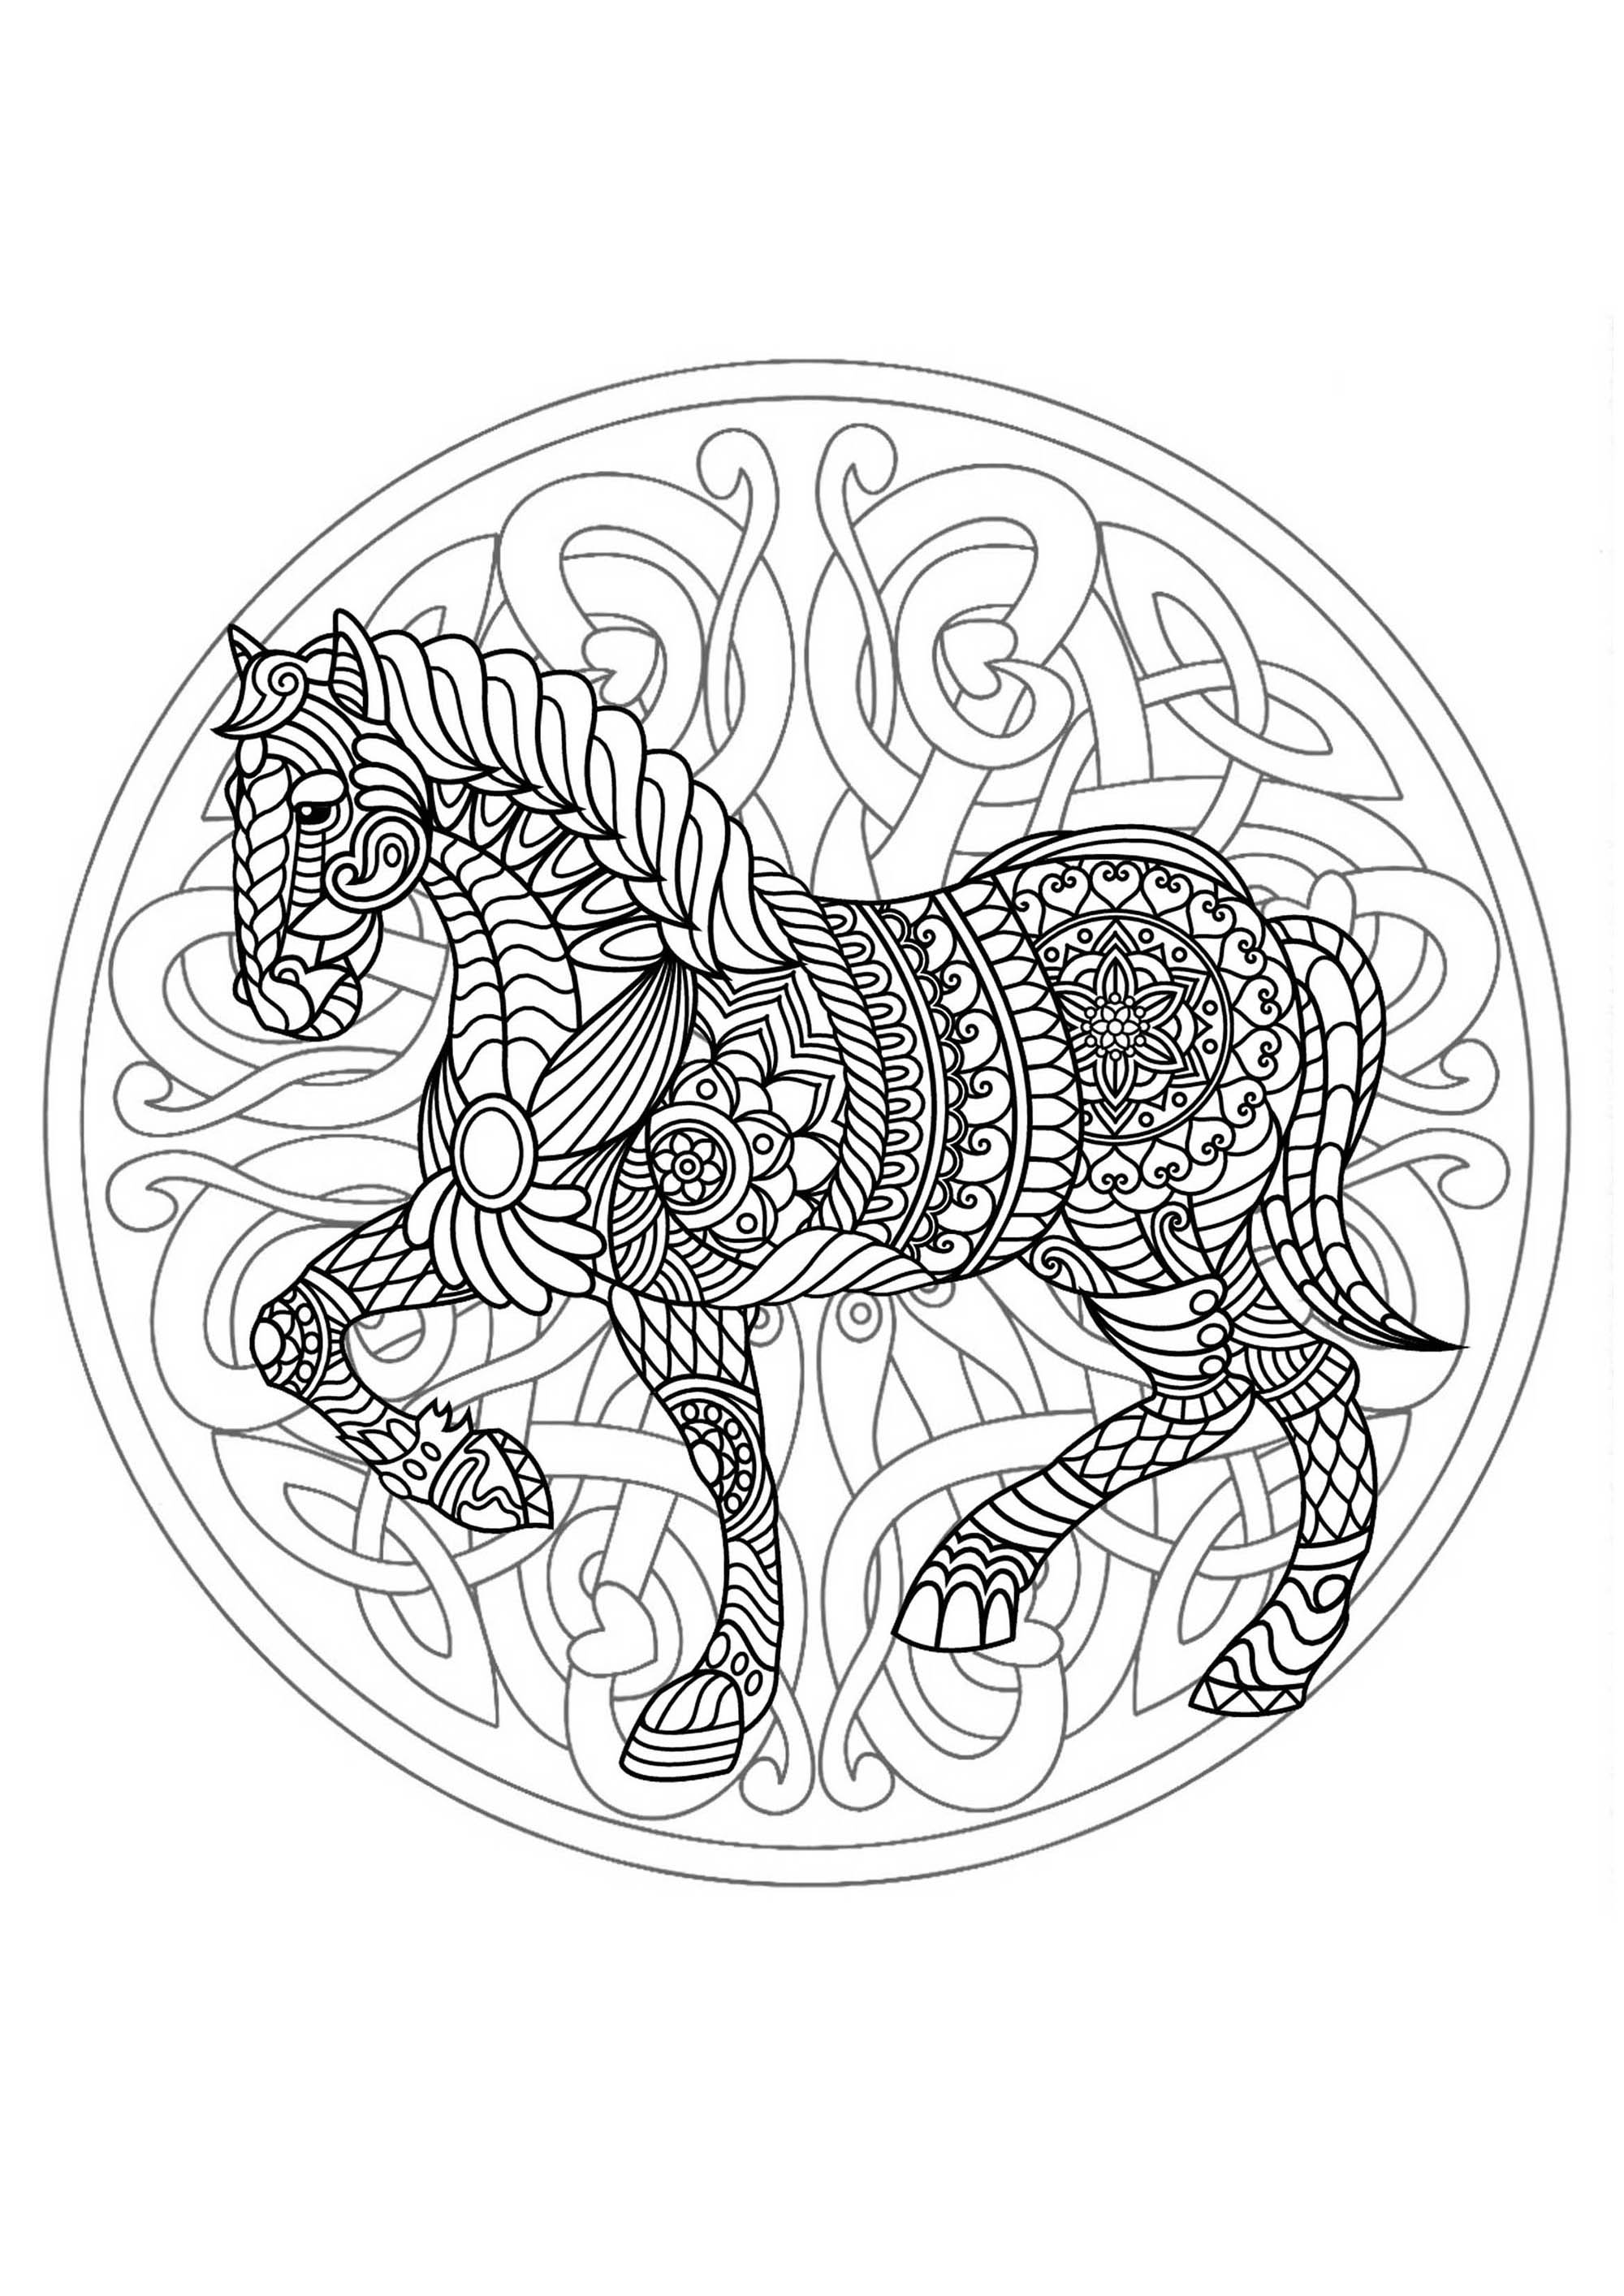 Ce cheval élégant et majestueux n'attend qu'à être colorié dans ce joli Mandala très original, à vous de jouer.